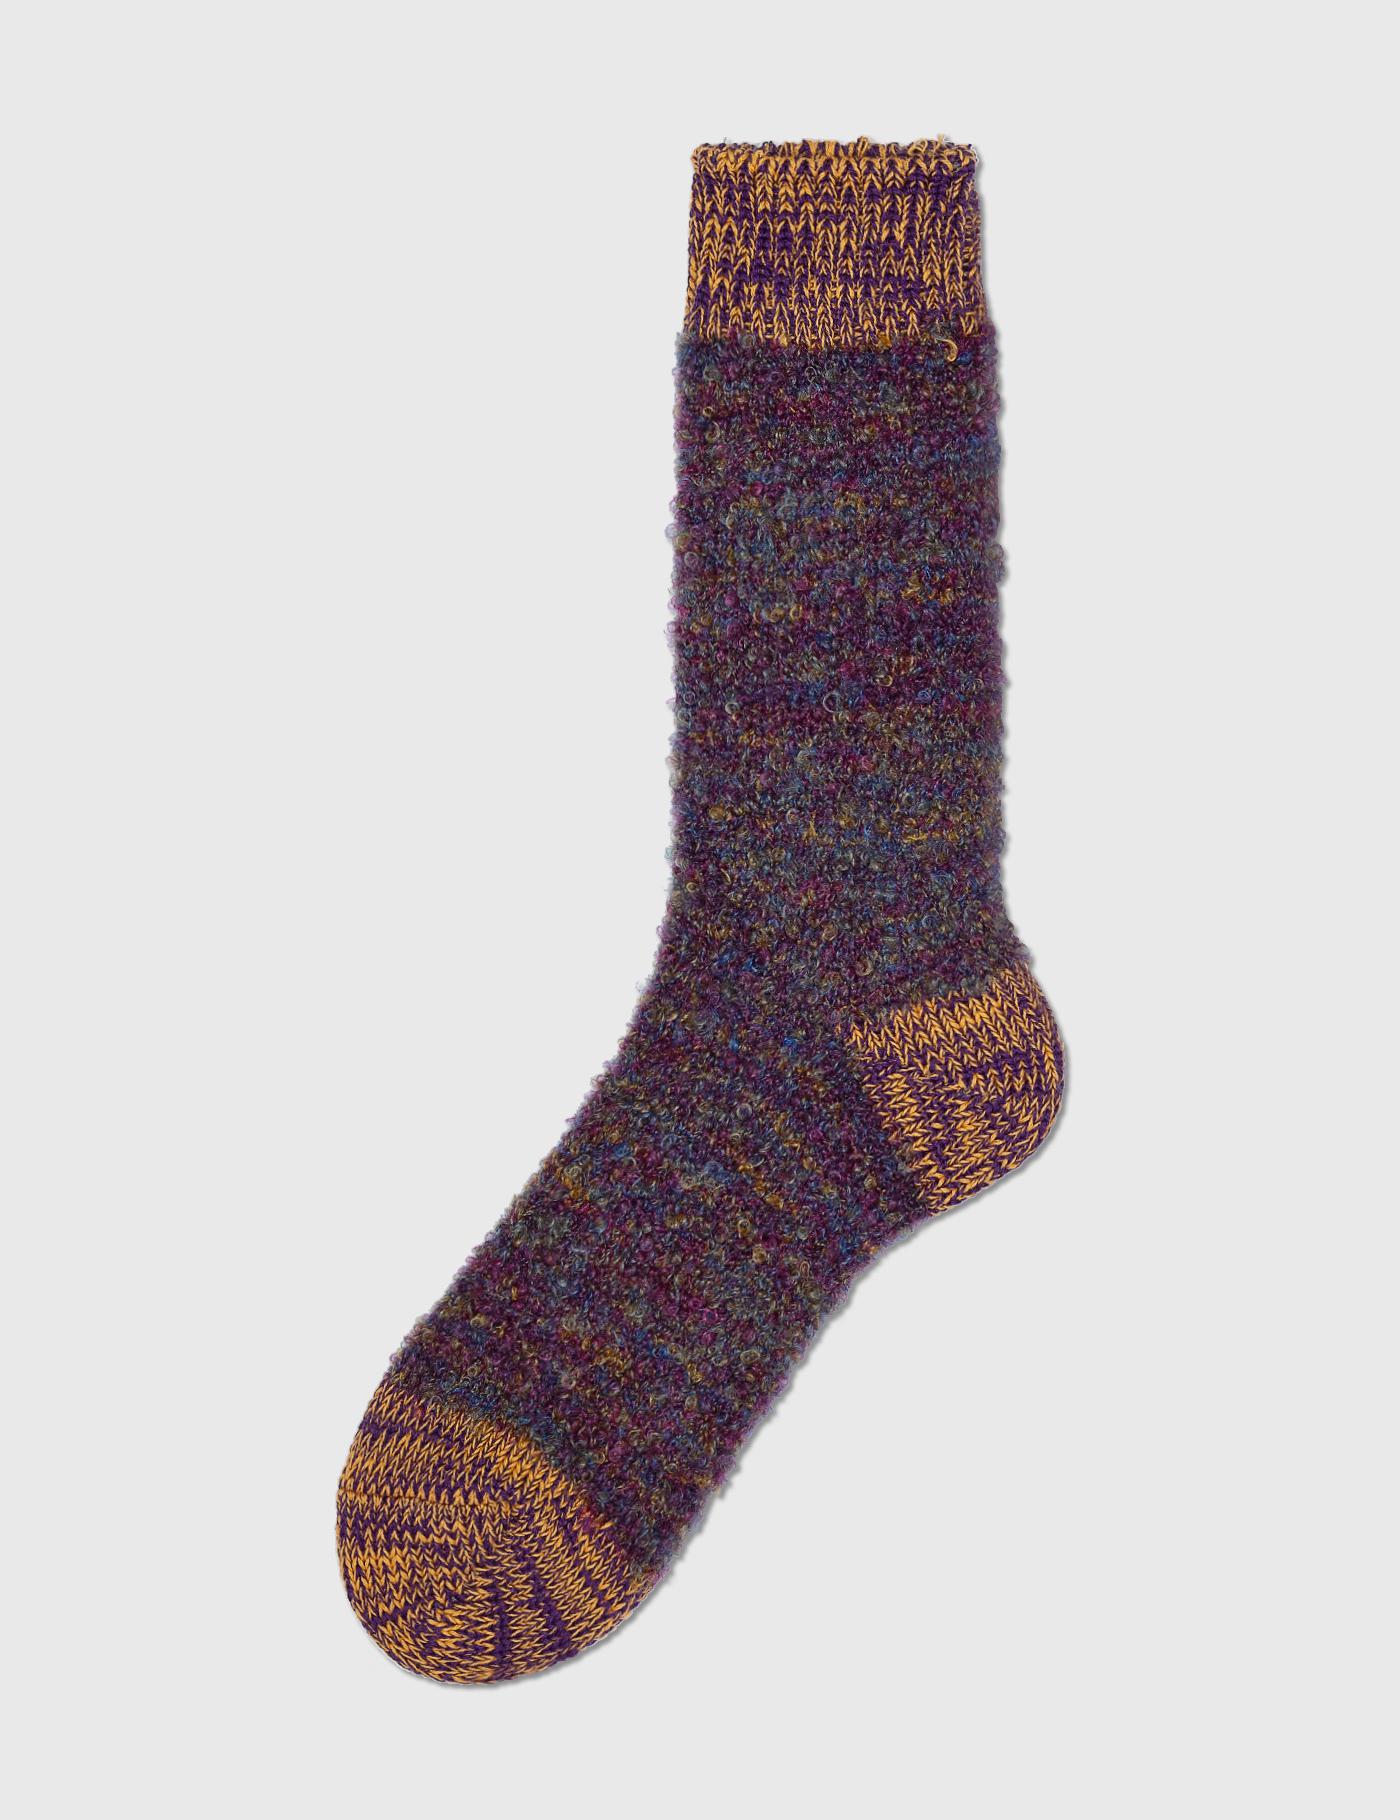 Mohair Wool Socks by DECKA